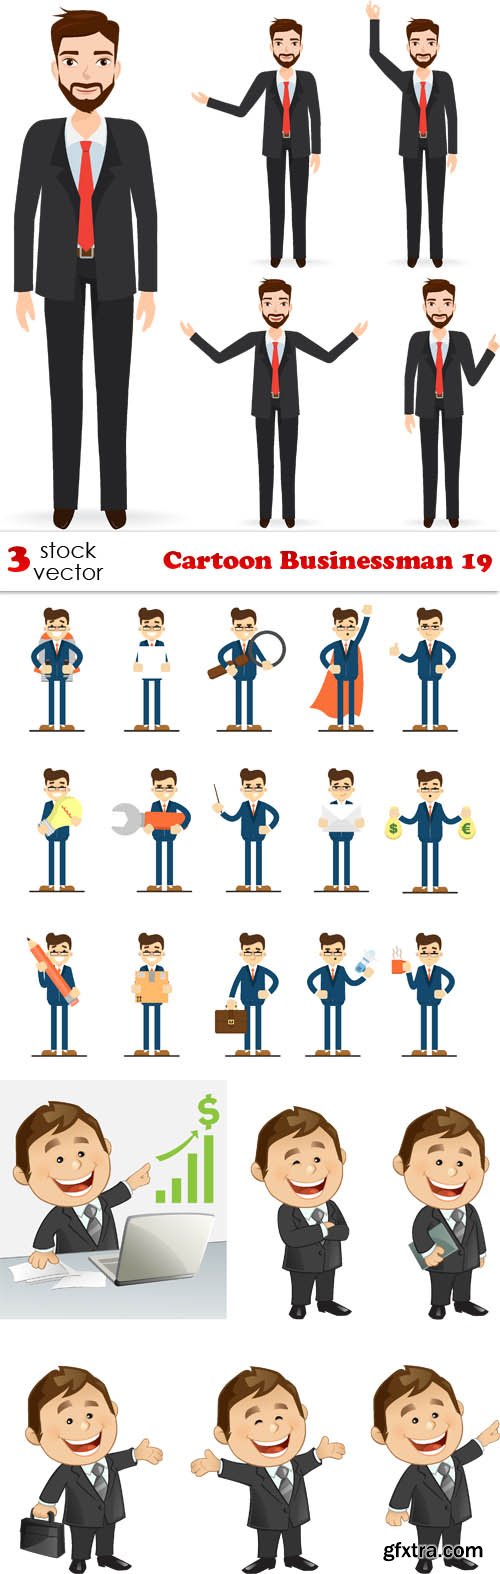 Vectors - Cartoon Businessman 19